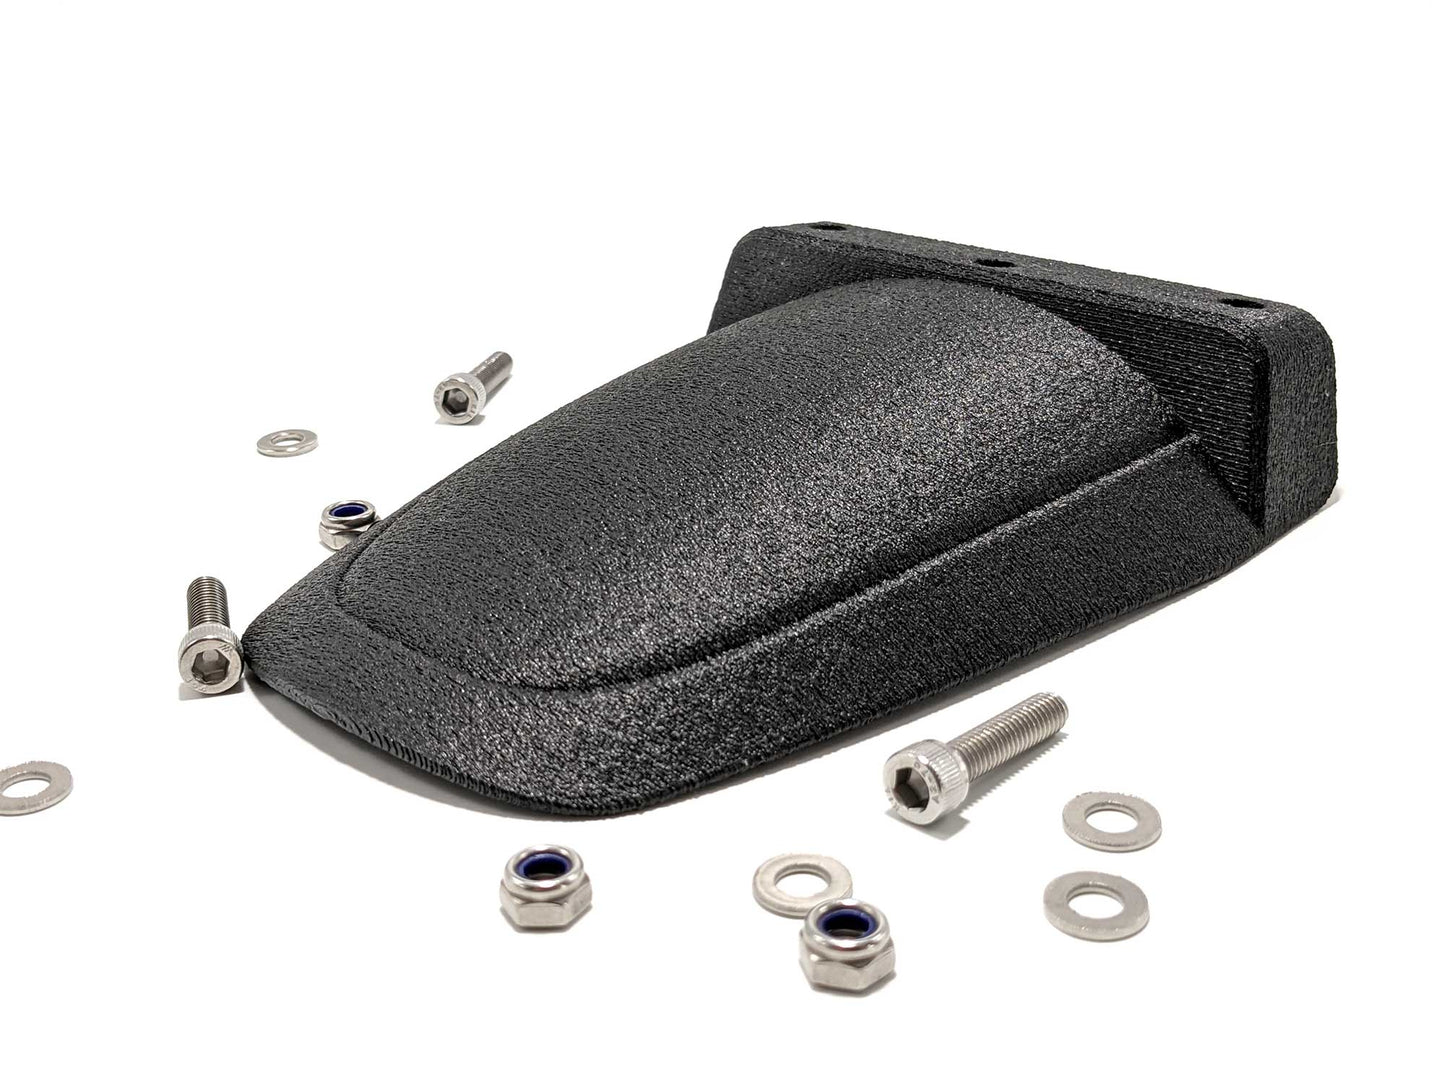 Fender Kit with Integrated Tail Light for Super73 Z1 - Nylon Carbon Fiber - Wrinkle Black